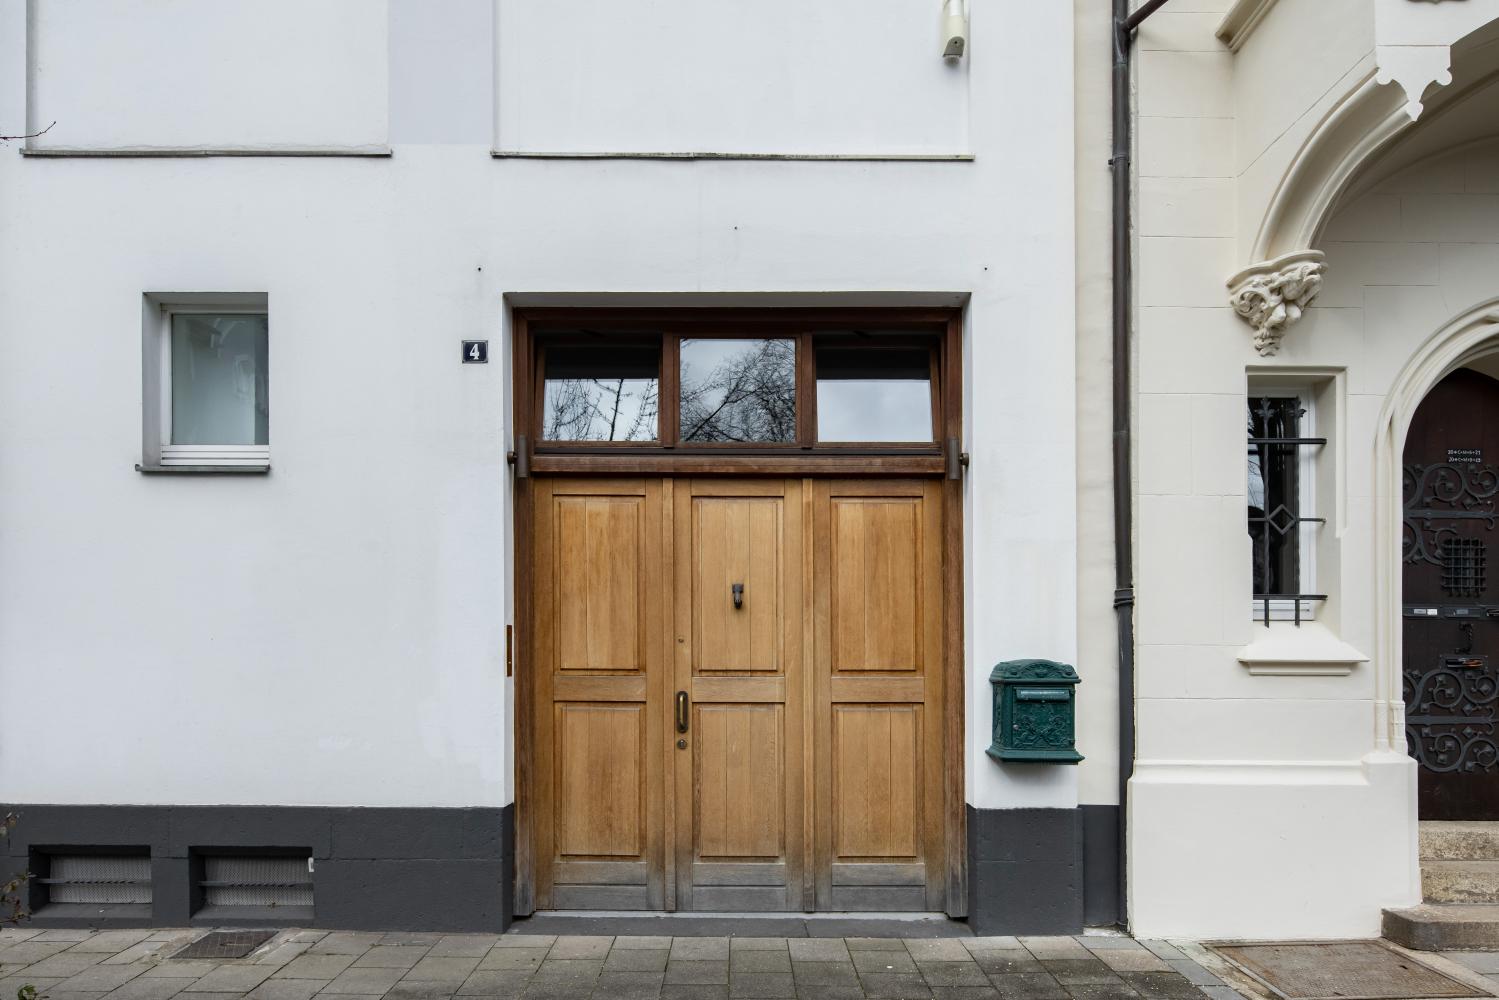 Eingang zum früheren Haus des Künstlers Joseph Beuys am Drakeplatz 4, Düsseldorf 